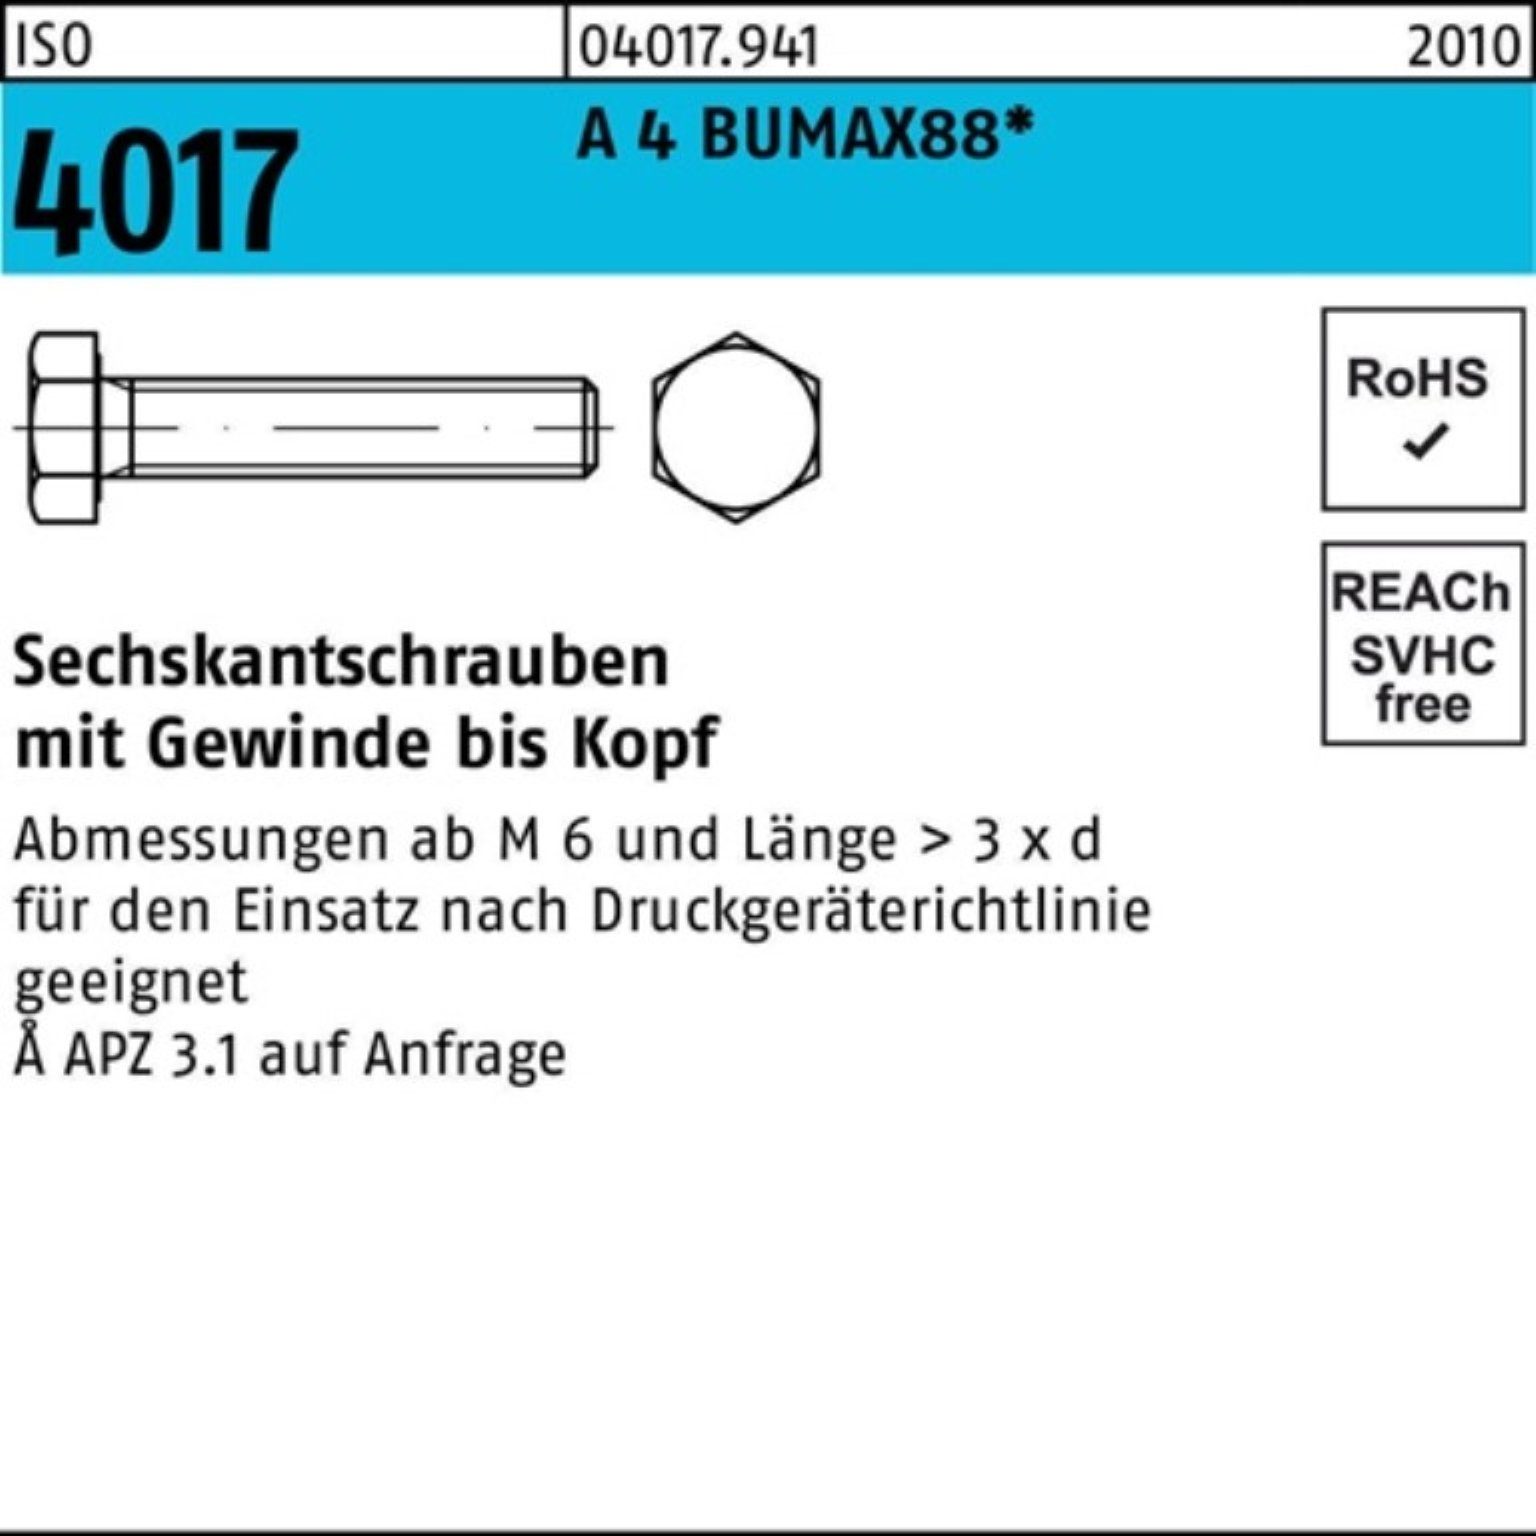 Pack VG Sechskantschraube Bufab BUMAX88 4017 4 M8x Stück A ISO 50 25 100er Sechskantschraube